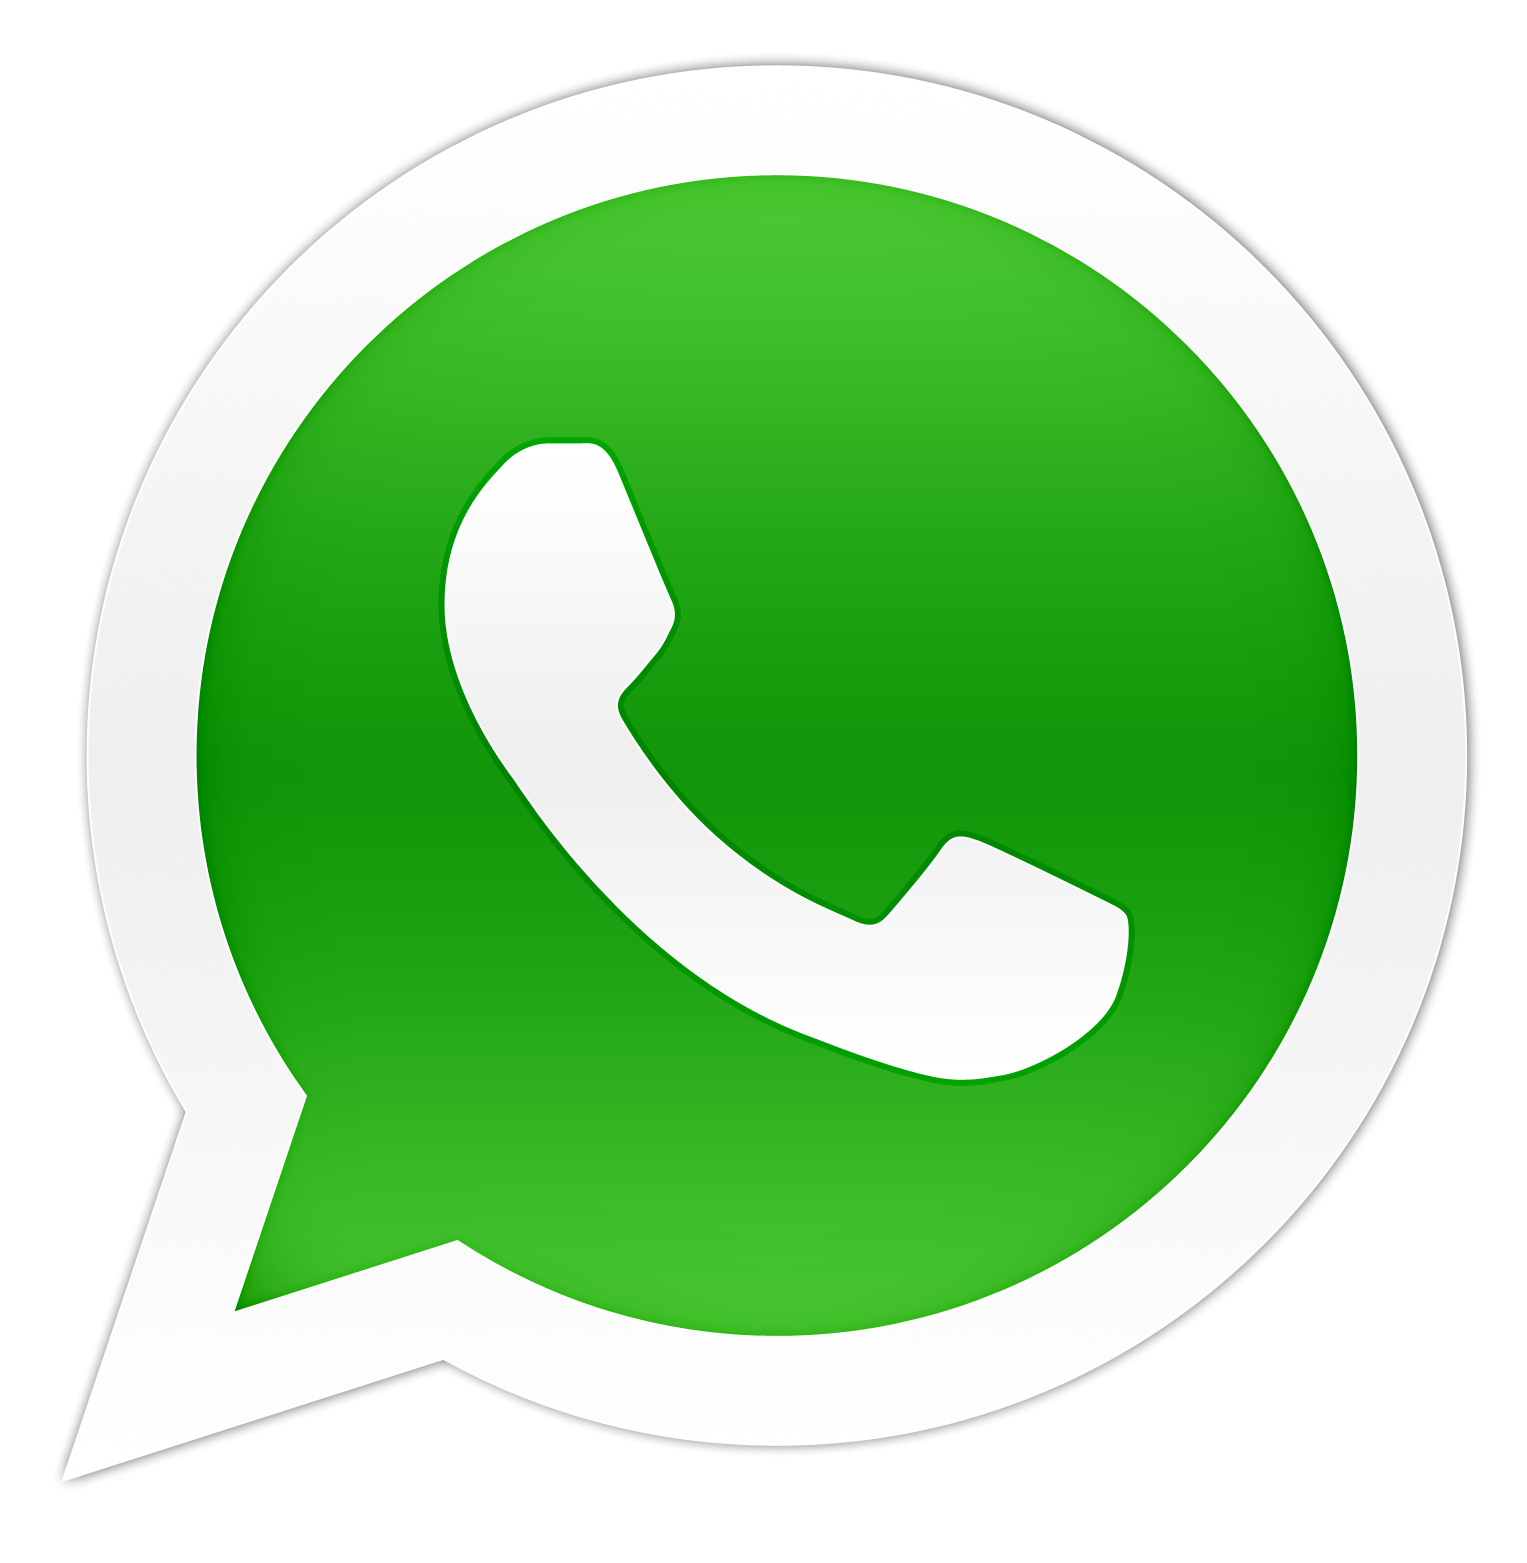 whatsapp-logo-icone.png